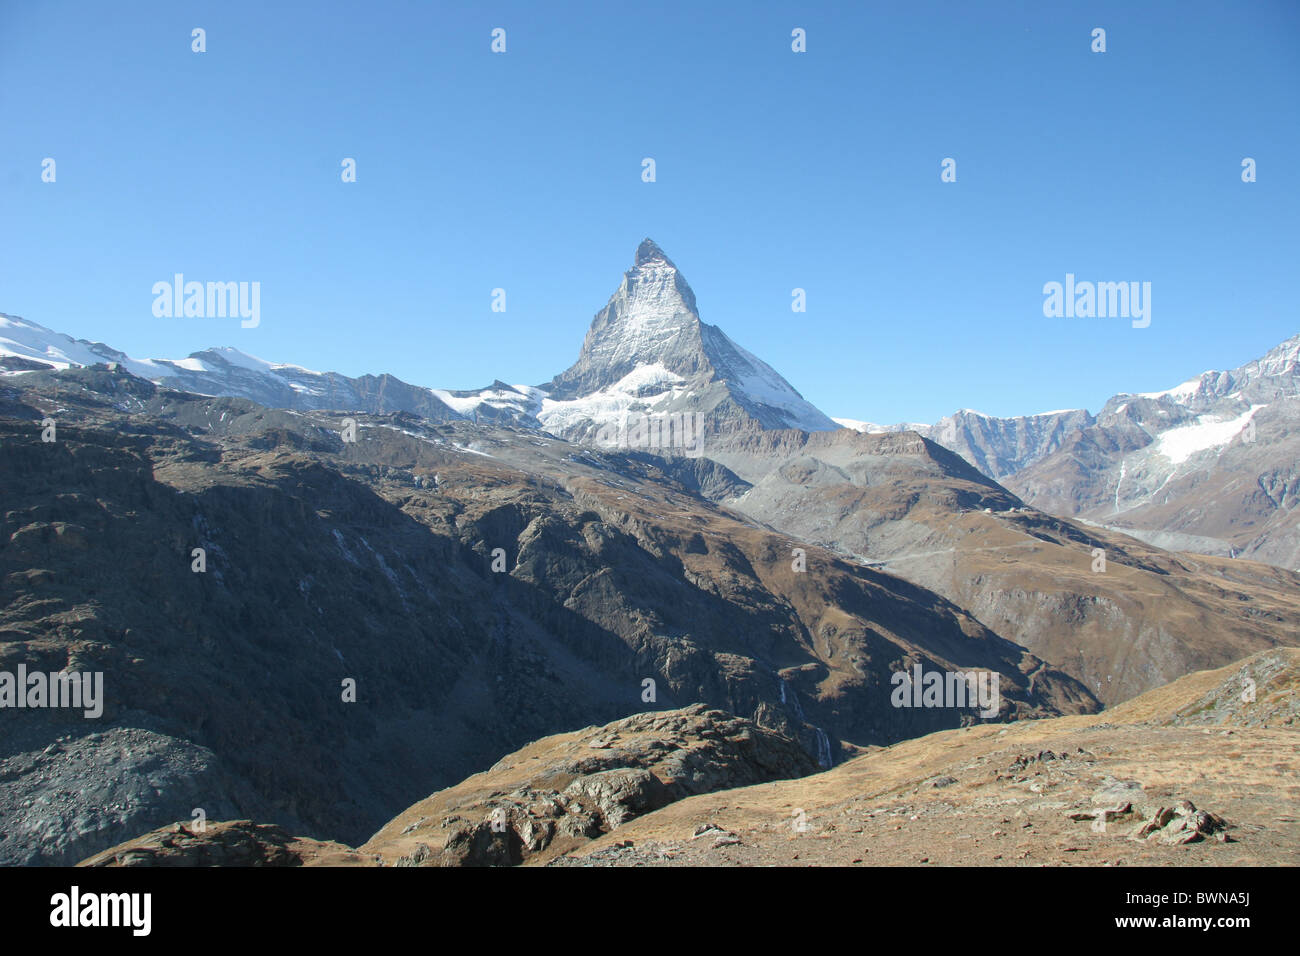 Switzerland Europe Canton Valais Zermatt Matterhorn autumn mountain mountains alps alpine landscape Stock Photo